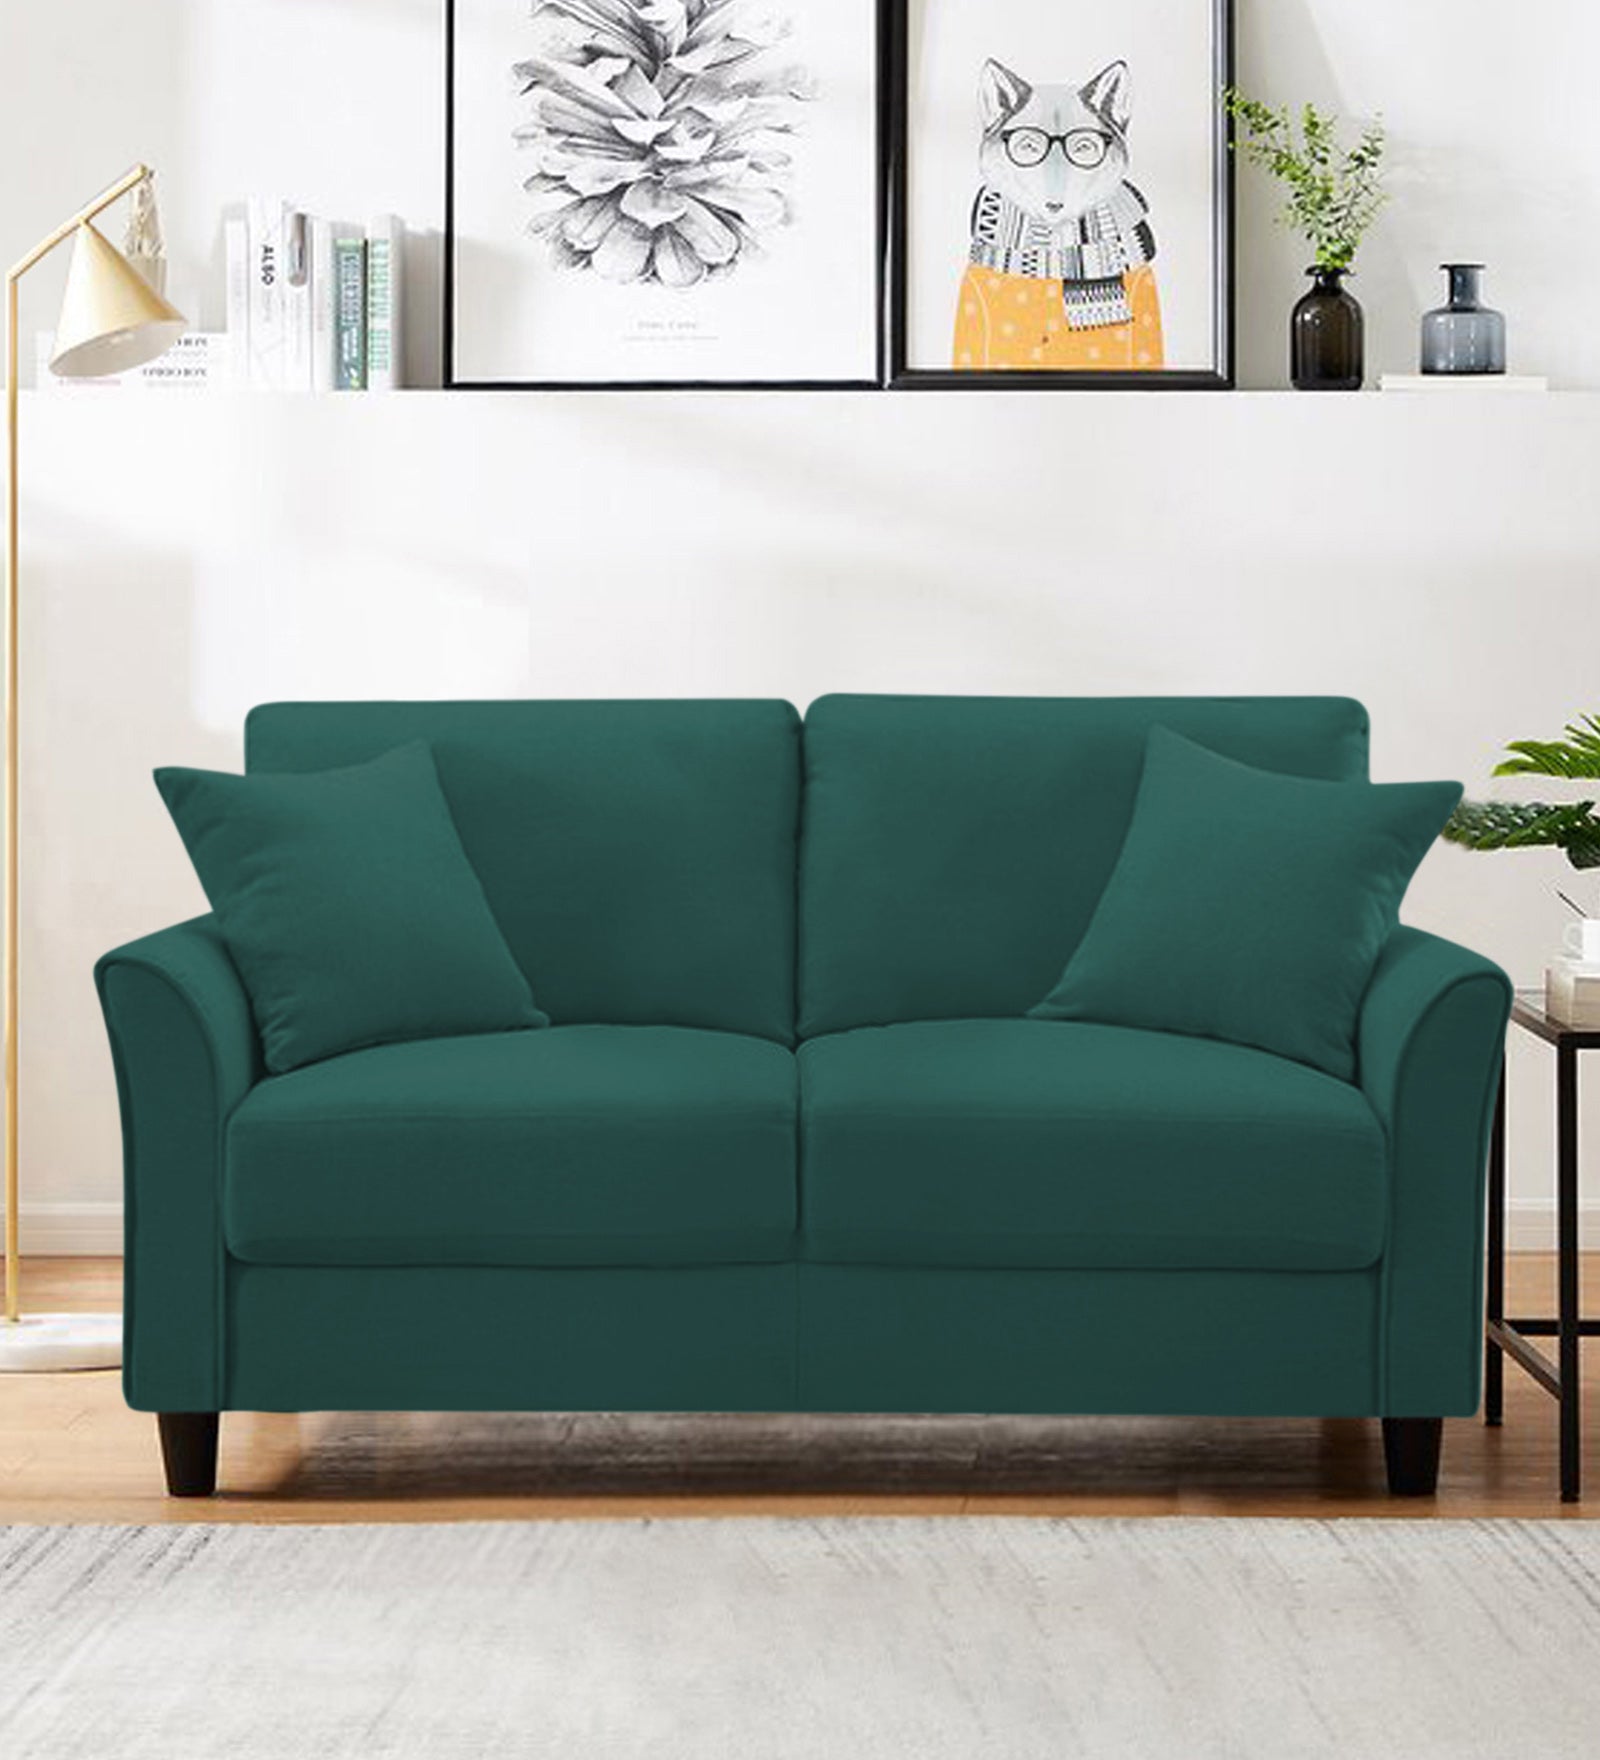 Daroo Velvet 2 Seater Sofa In Pine Green Colour